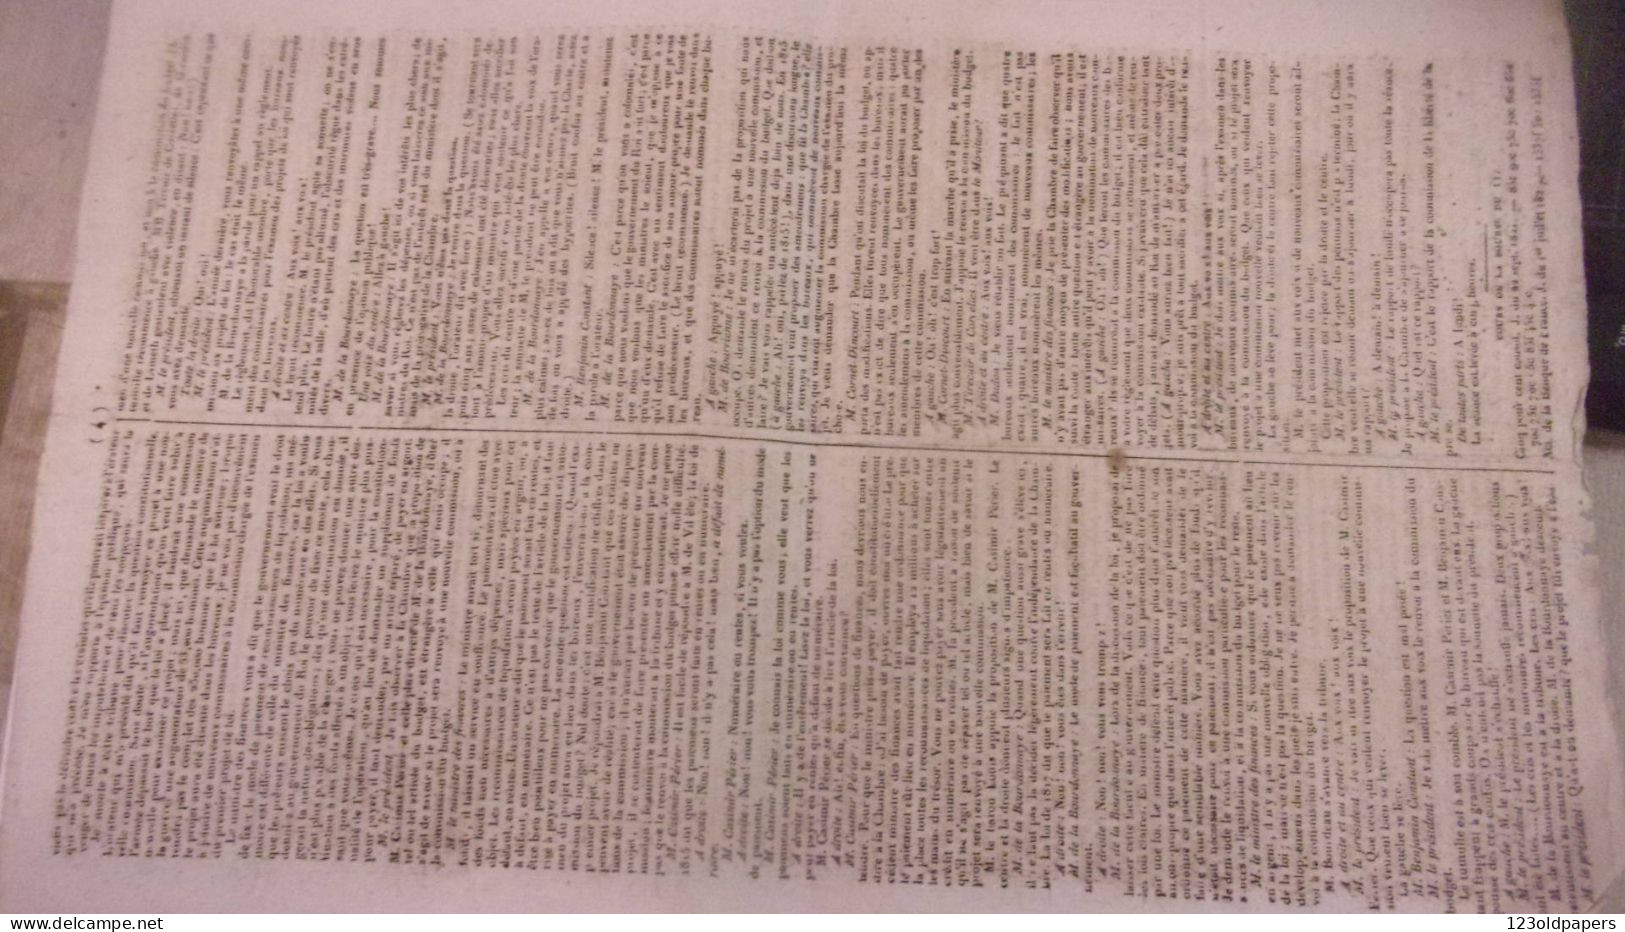 RARE 1822 LE DRAPEAU BLANC JOURNAL POLITIQUE LITTERATURE THEATRES N°12 DENTU DUC D ORLEANS DUCHESSE DE BOURBON - 1801-1900